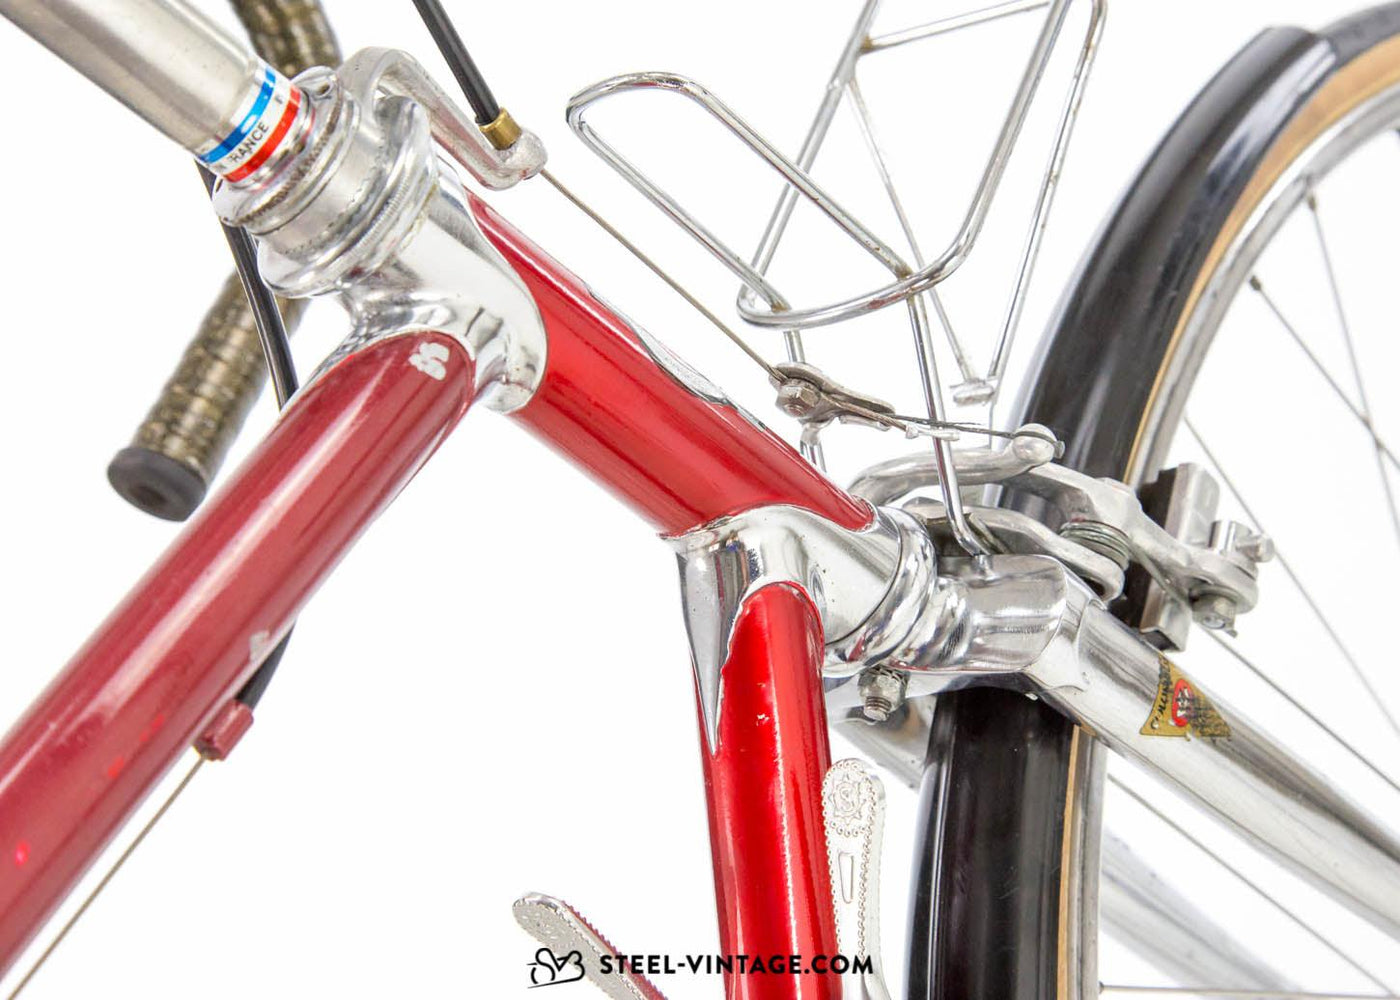 France Sport Classic Randonneur 1970s - Steel Vintage Bikes